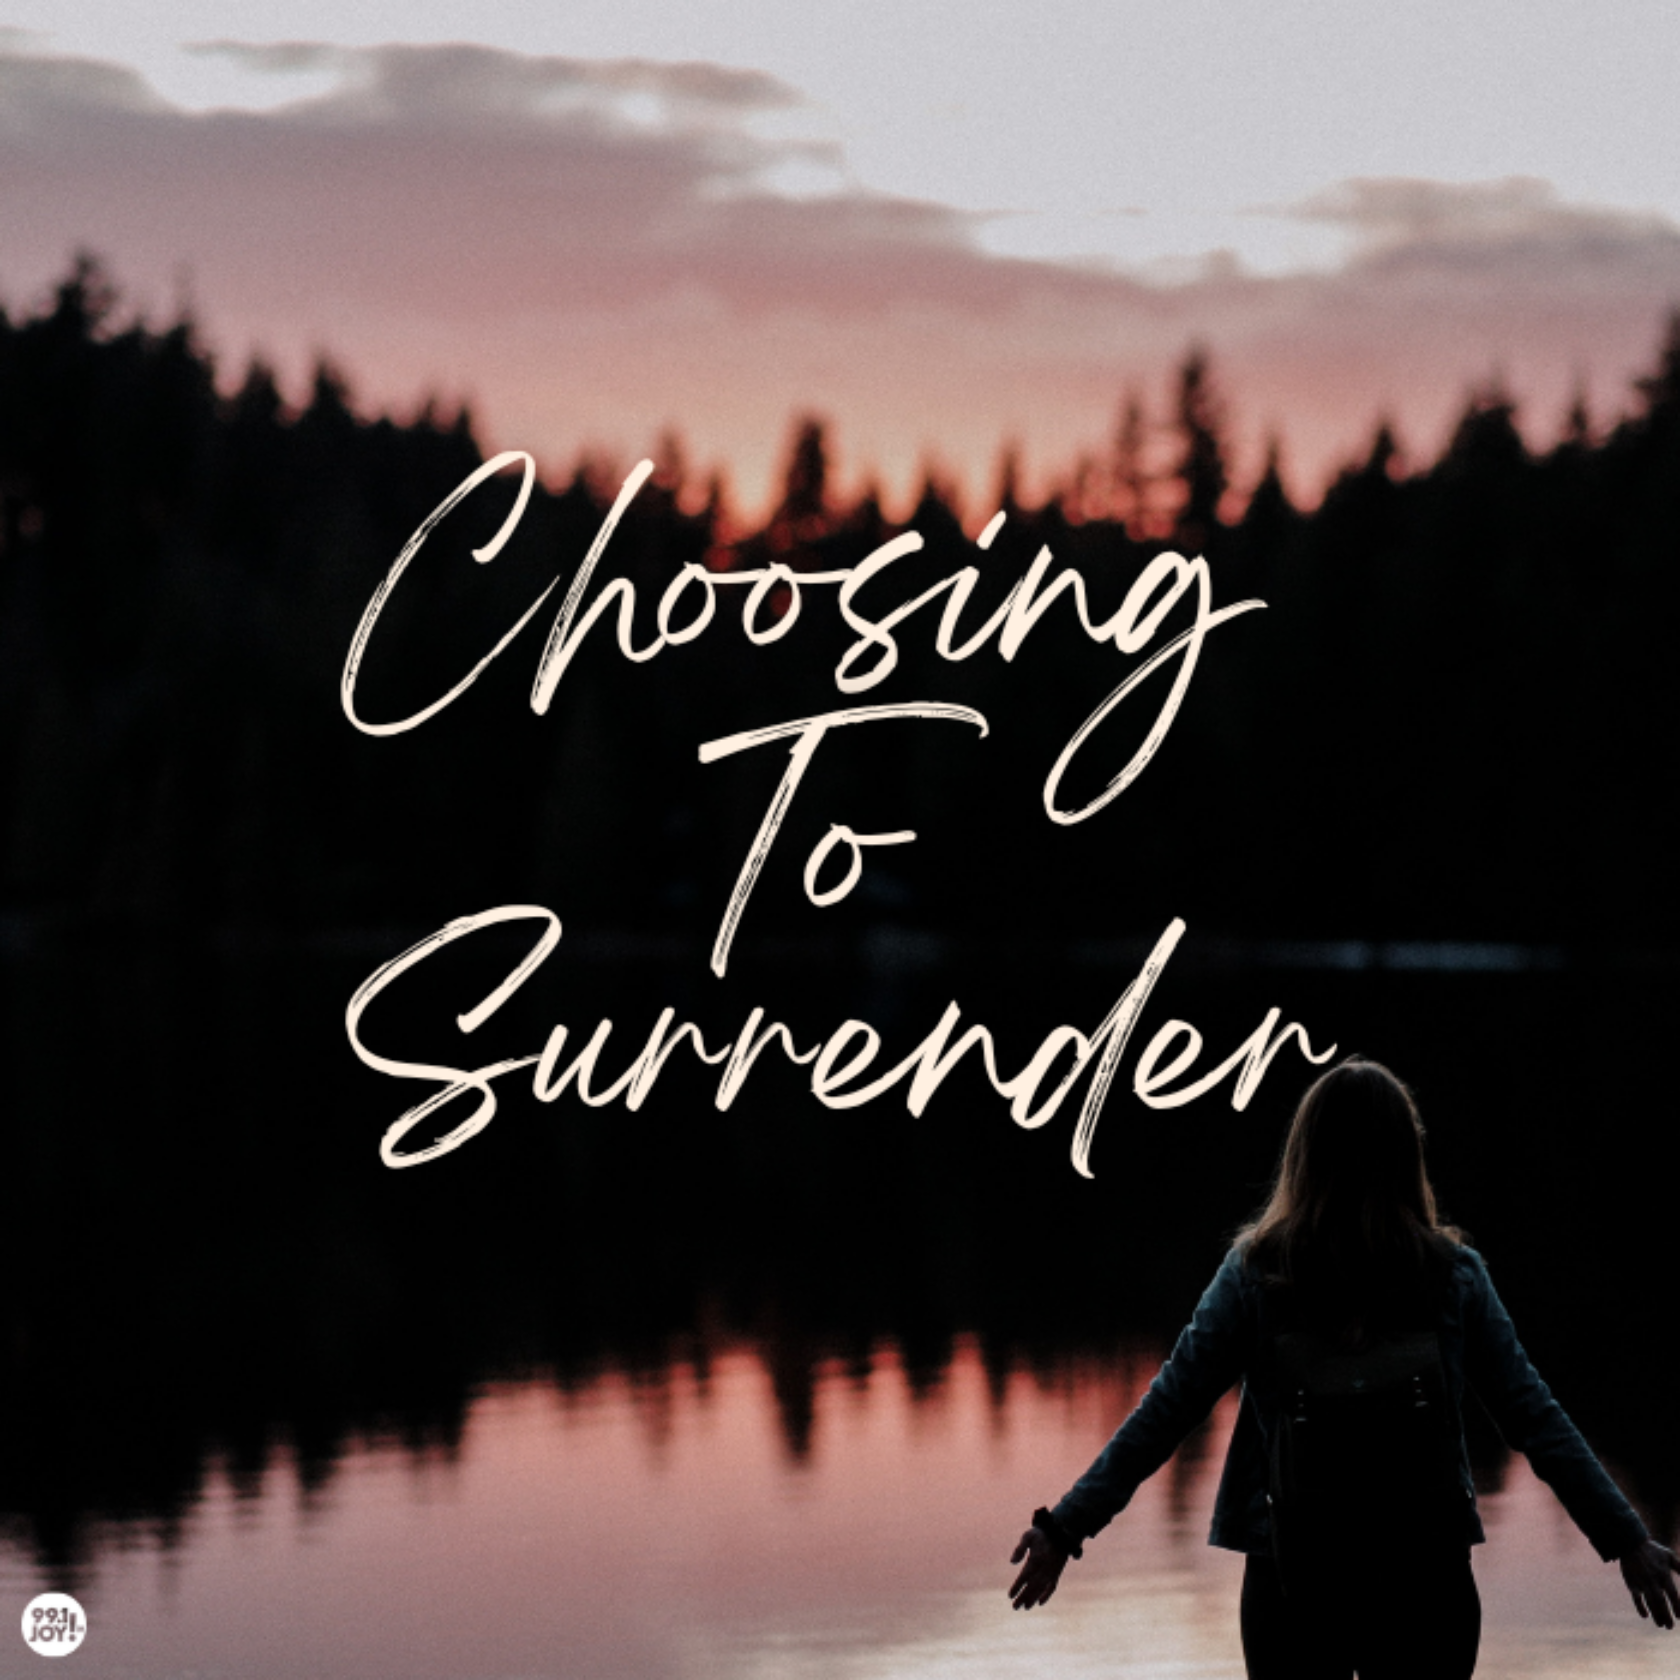 Choosing To Surrender